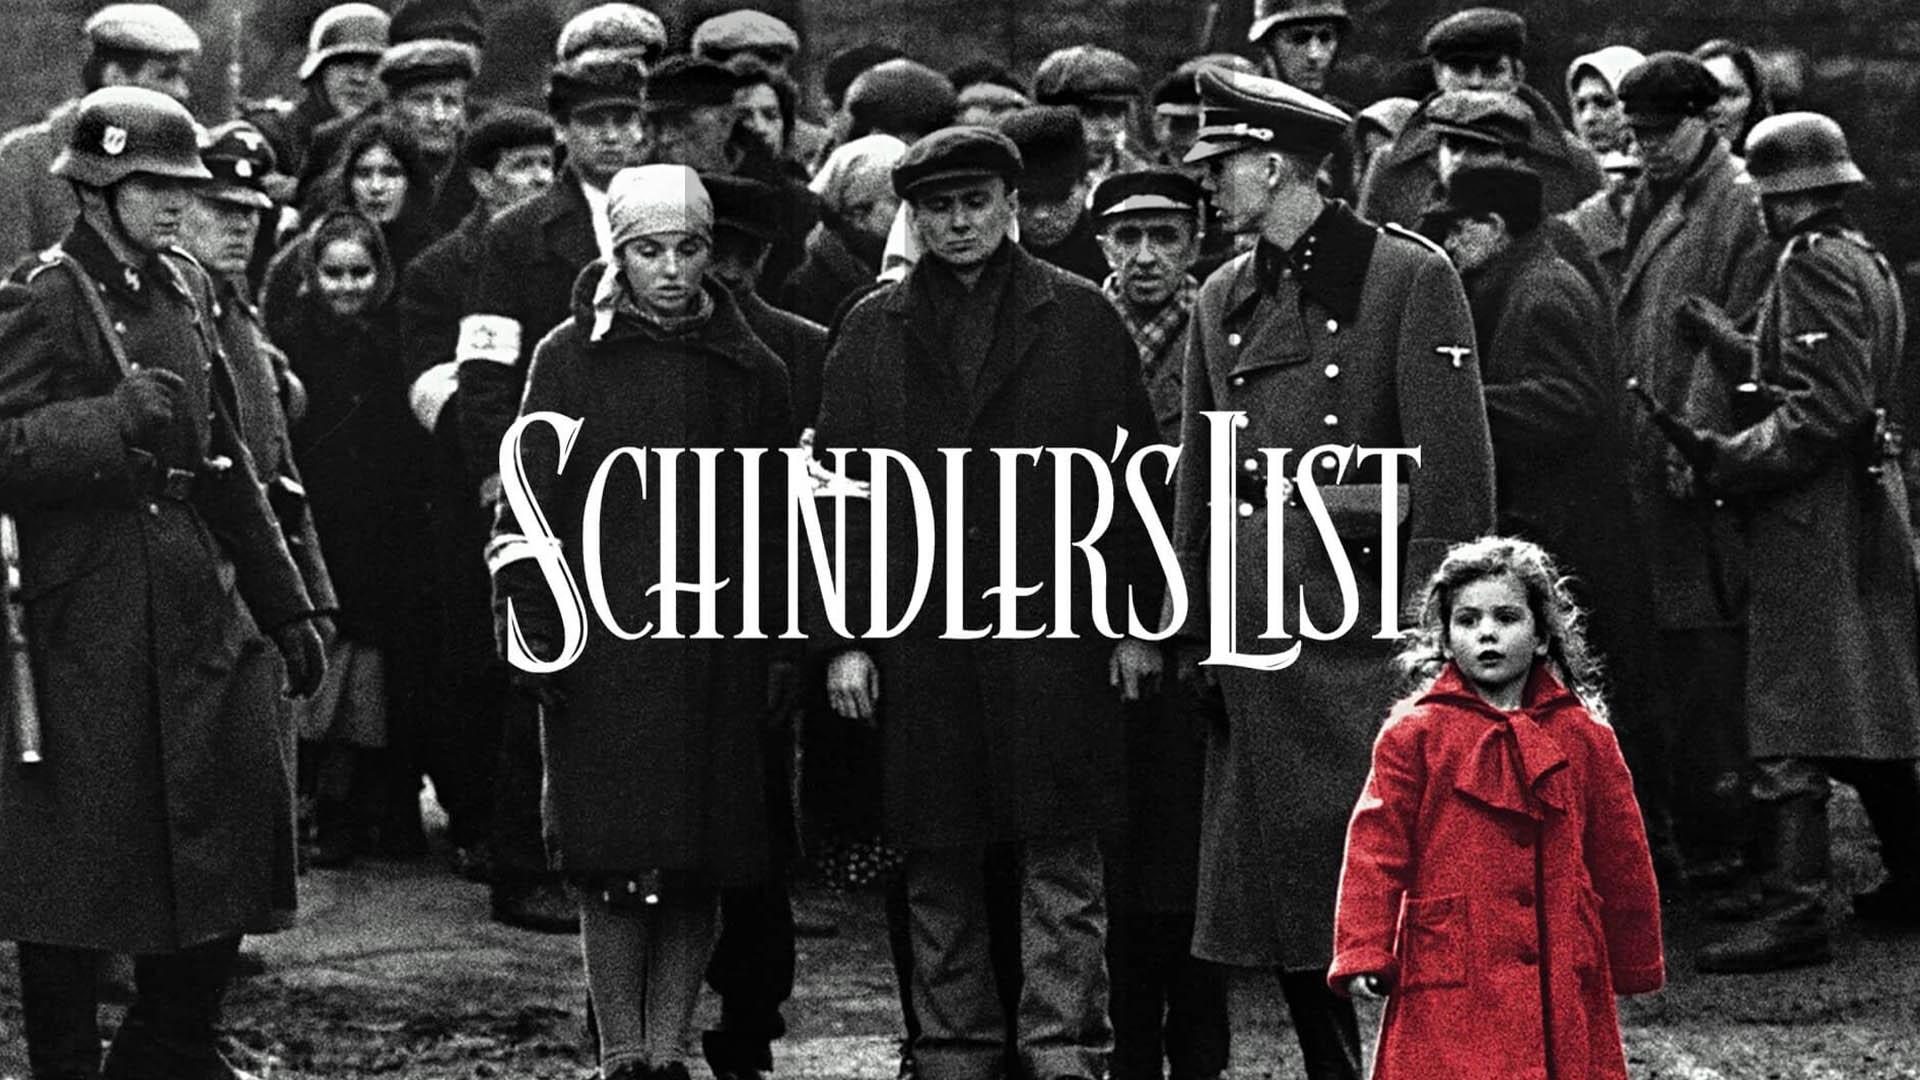 کاور فیلم schindler's list با حضور مردم و دختر معروف داستان با کت قرمز